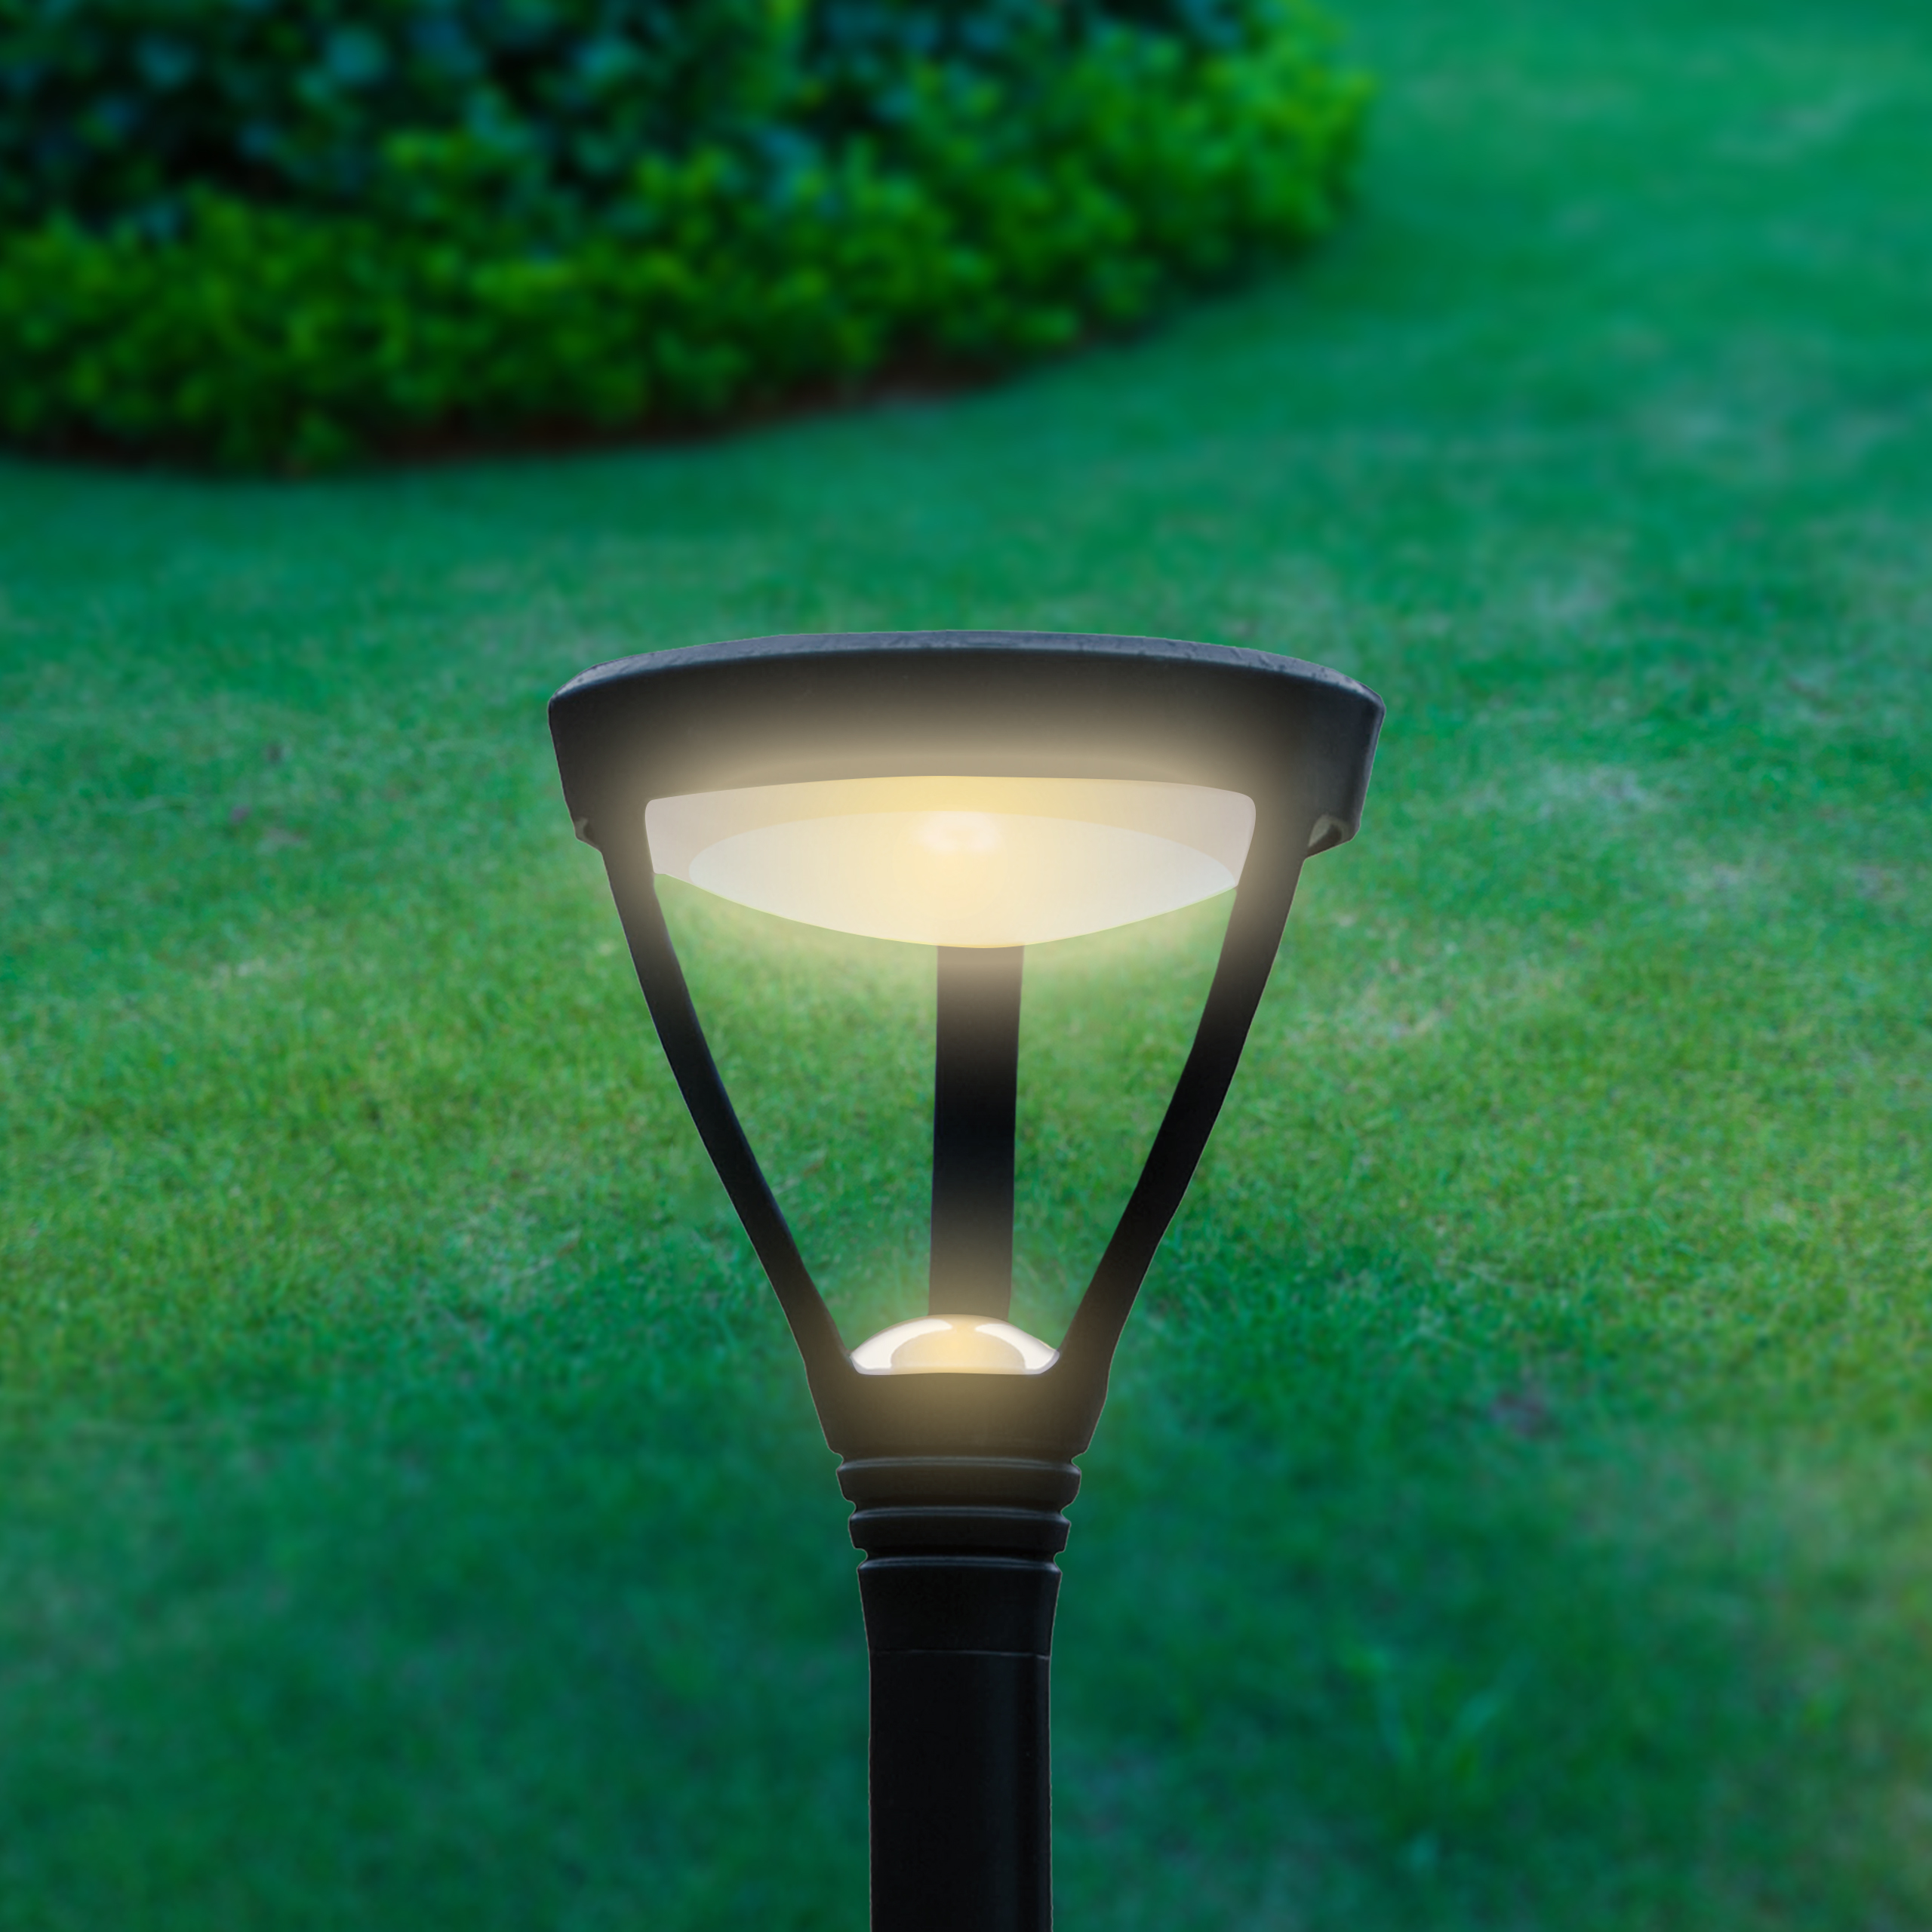 LED, Leuchtmittel, Lampen, Beleuchtung, Licht, Solar, Photovoltaik, Elektro  und Zubehör